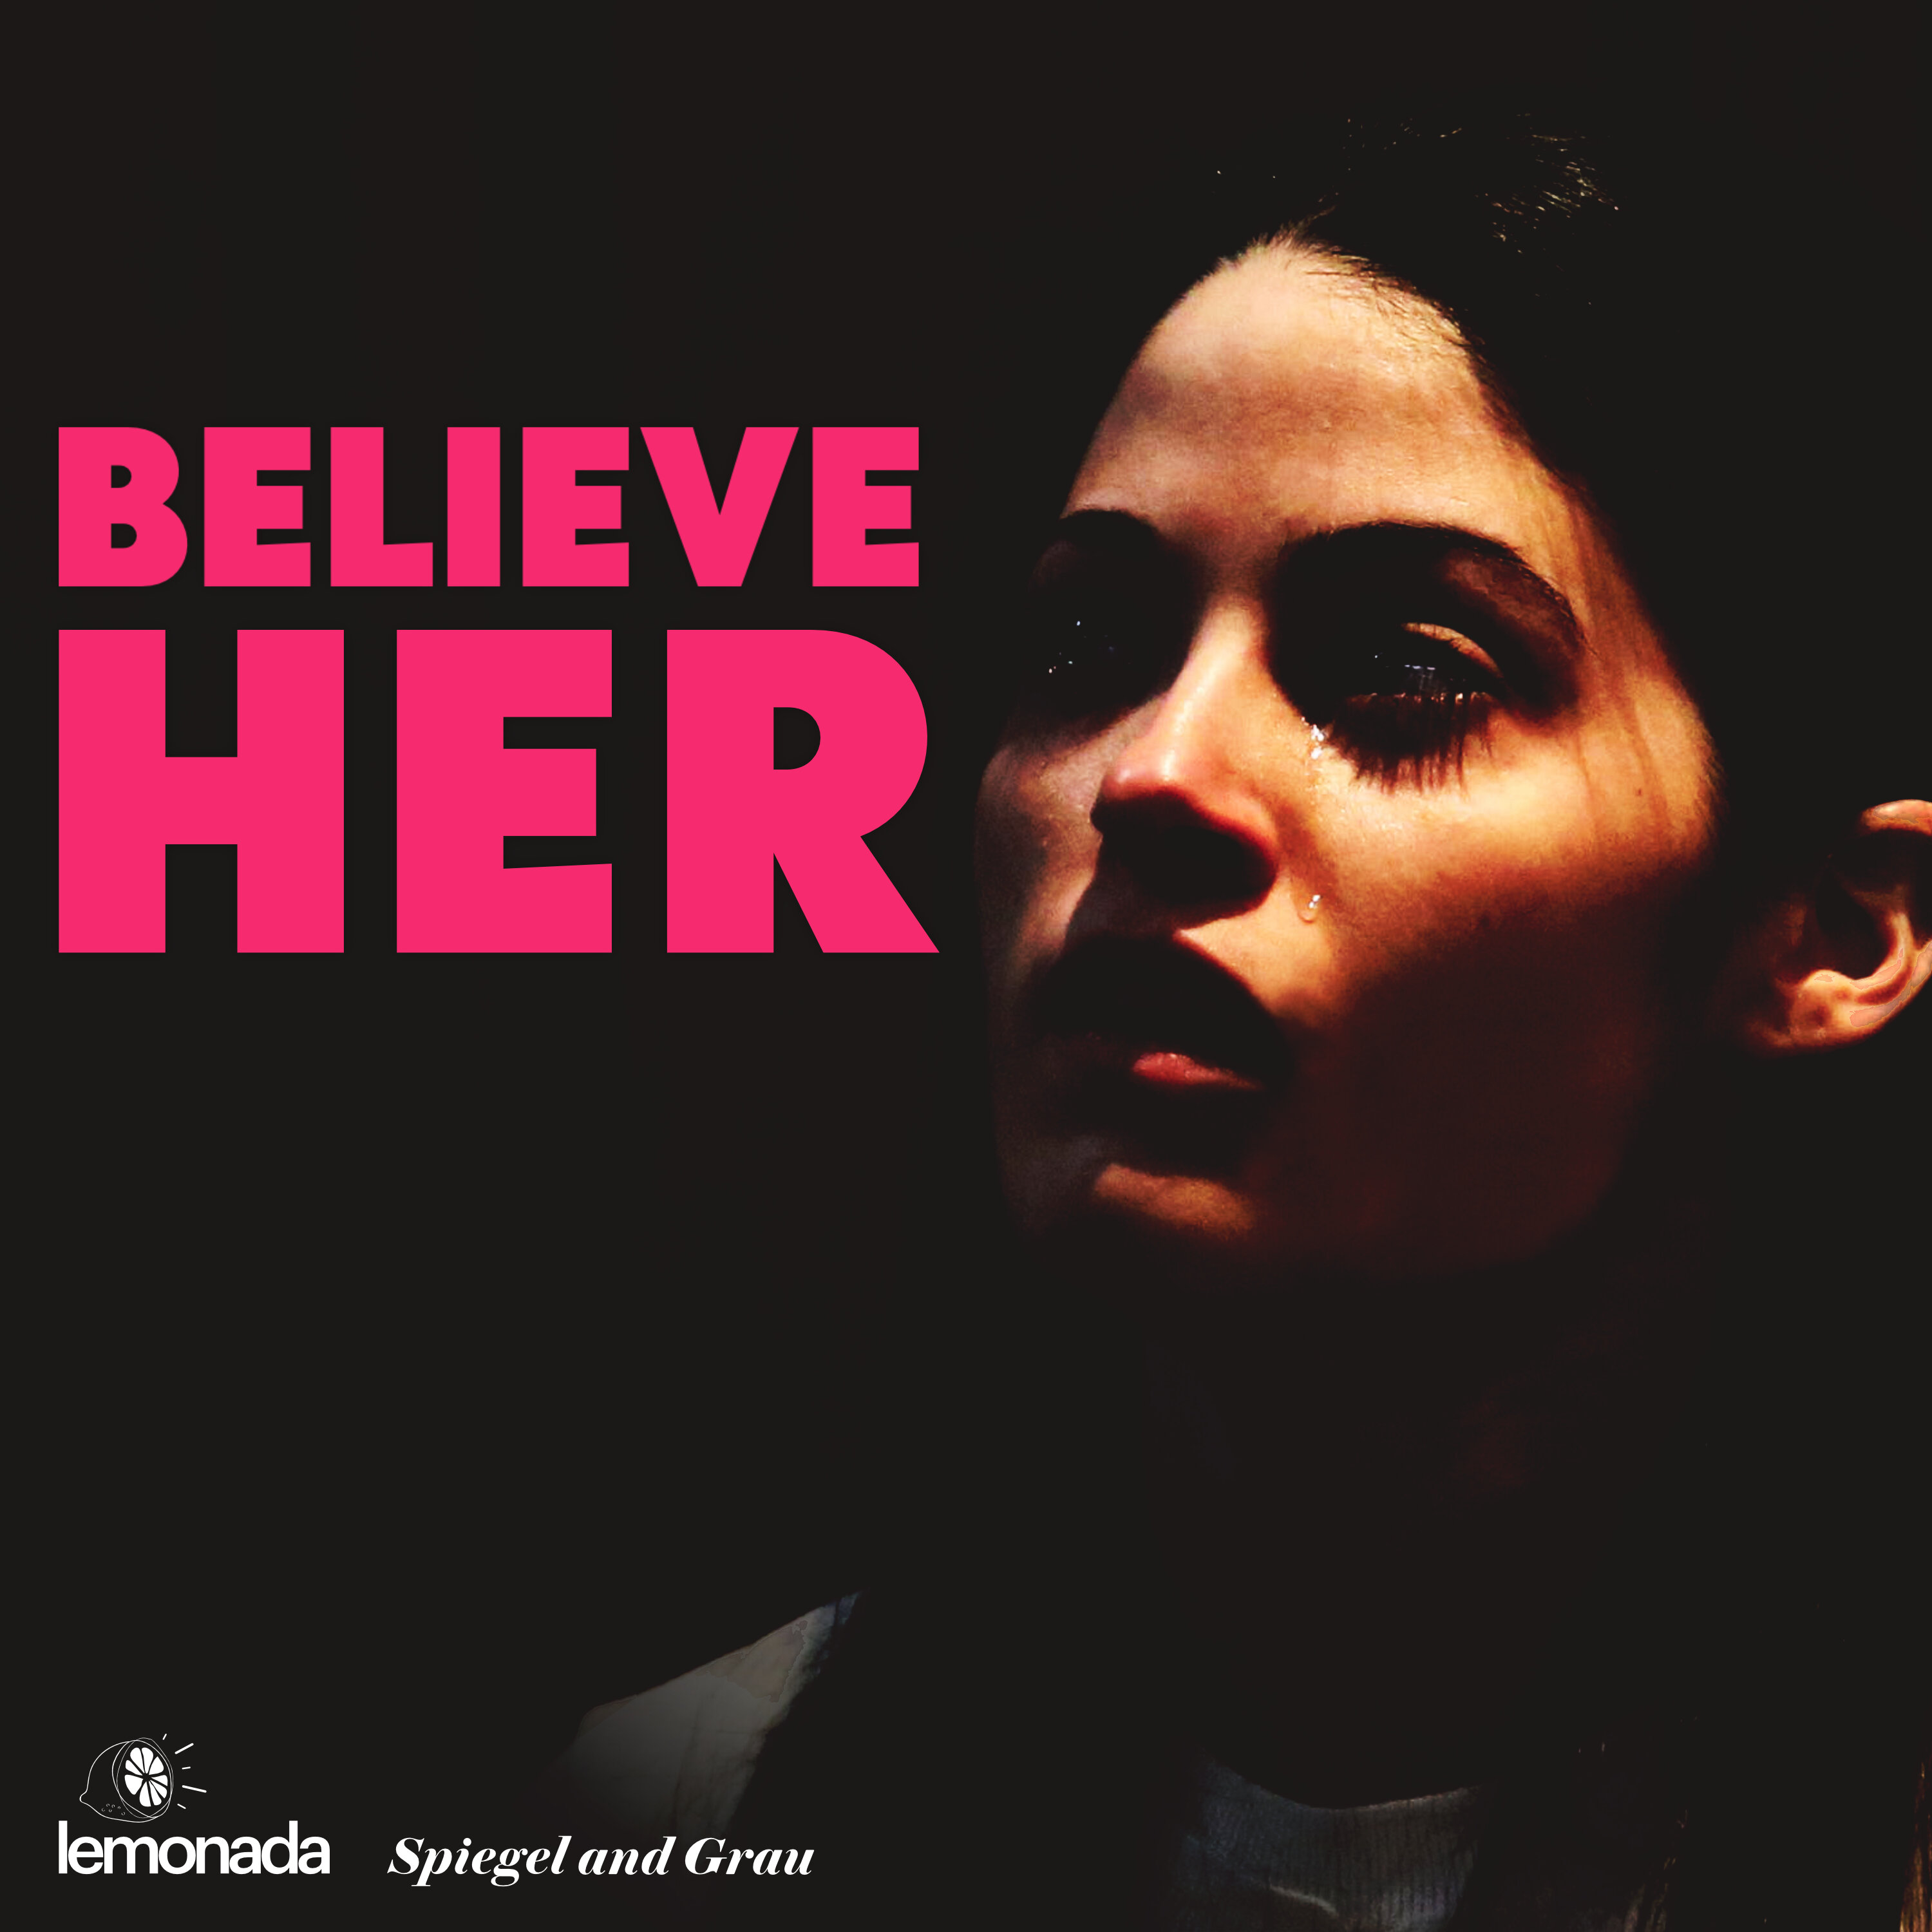 ‘Believe Her:’ Self-Defense or Murder?